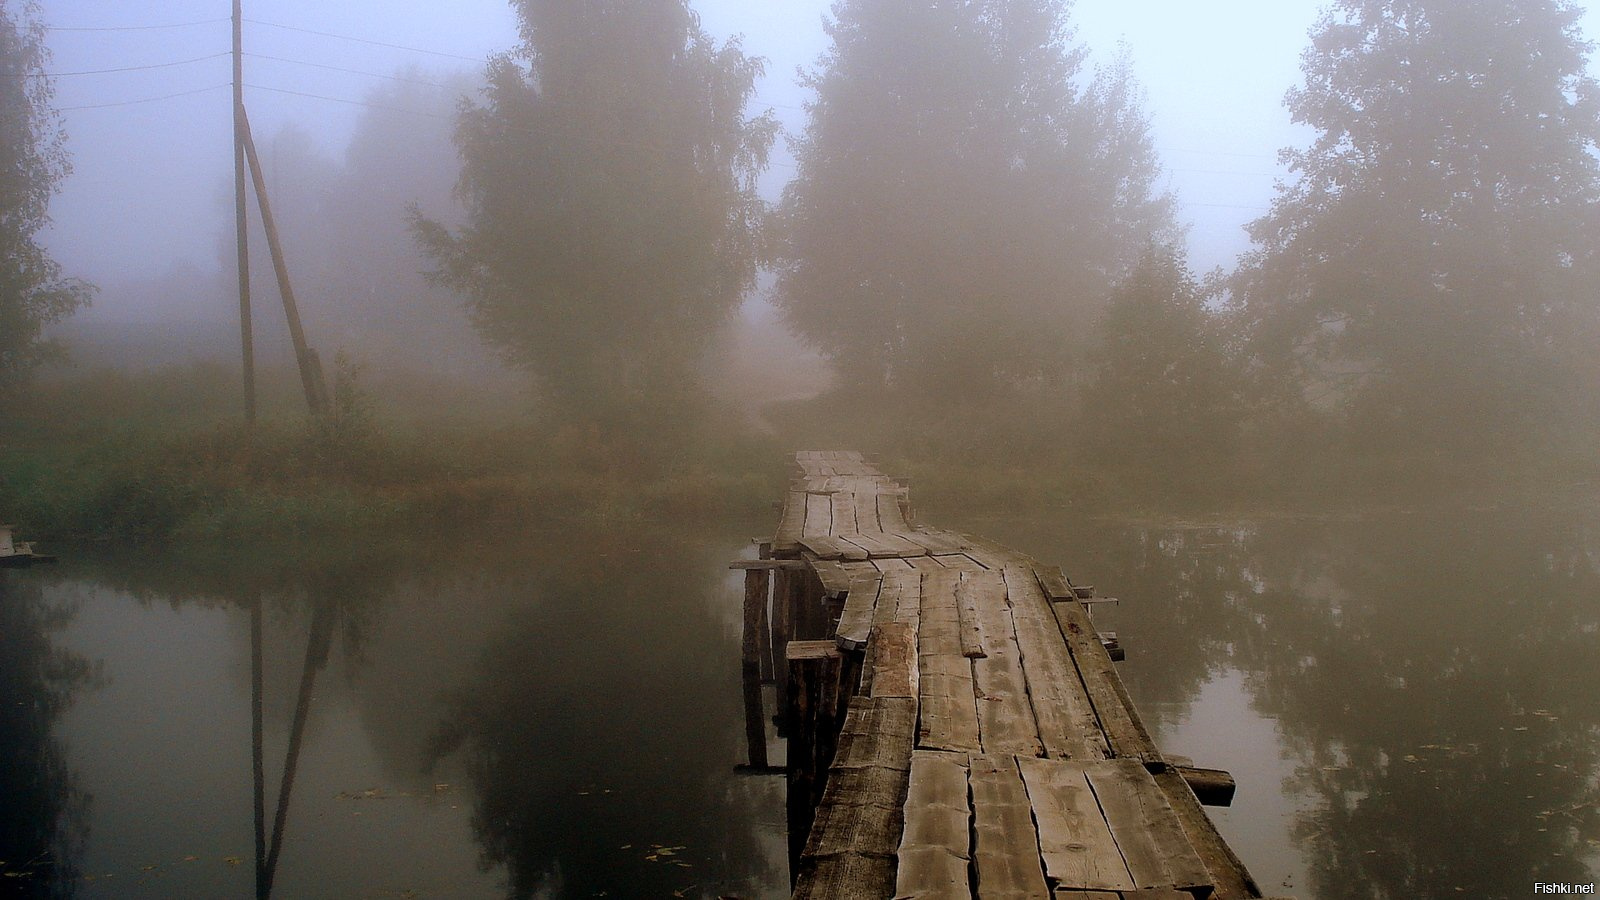 Послушай далеко далеко на озере. Деревня в тумане. Деревянный мост в тумане. Старый мост в тумане. Мостик в тумане.